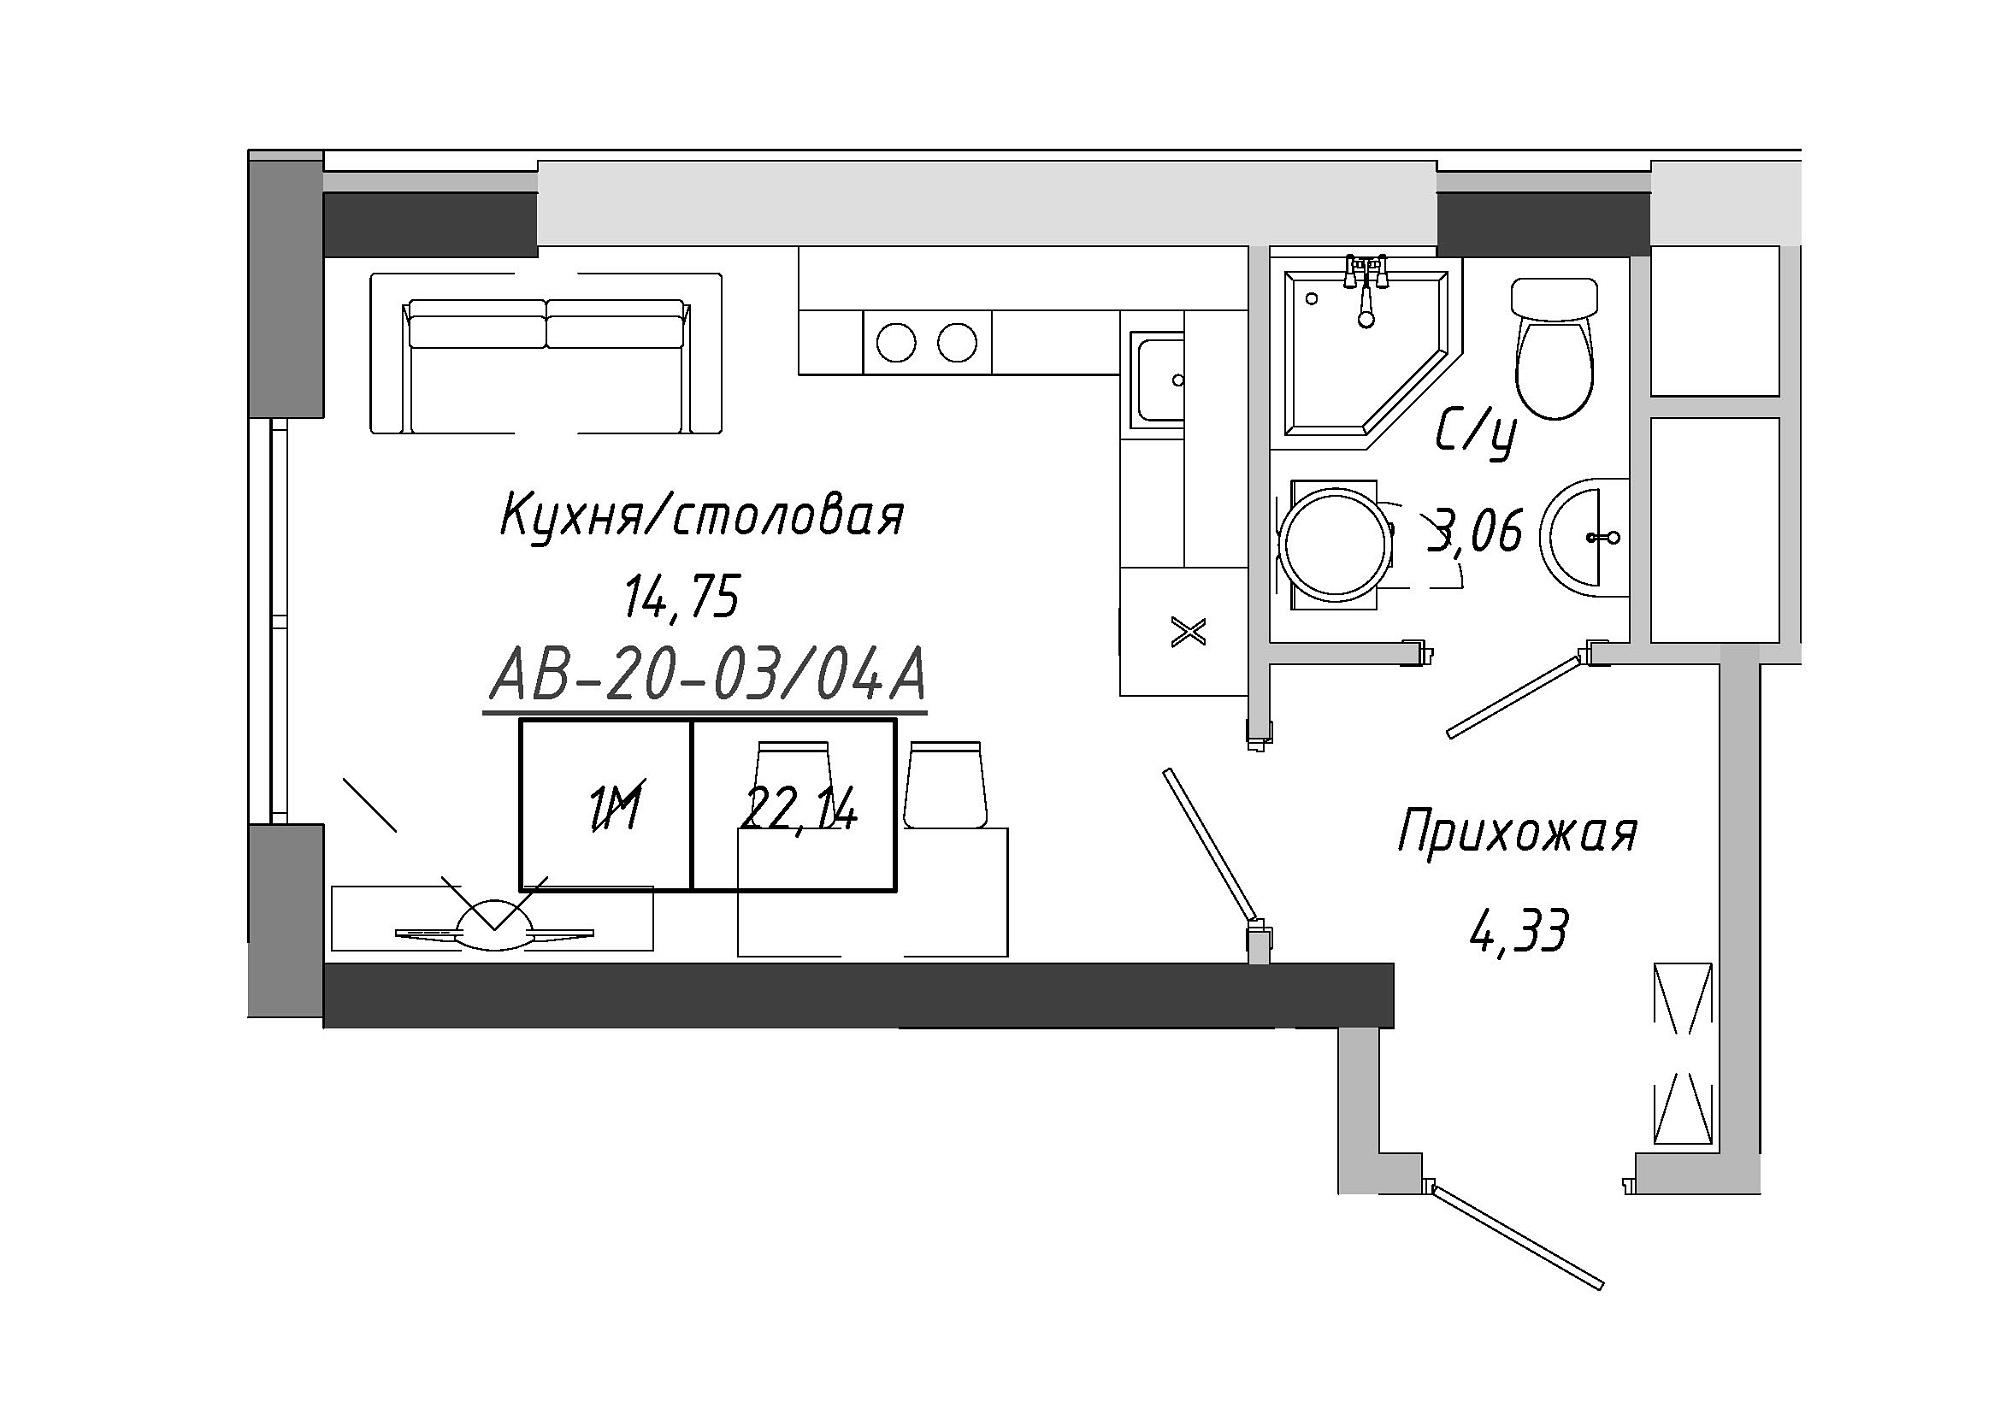 Планировка Smart-квартира площей 22.14м2, AB-20-03/0004а.